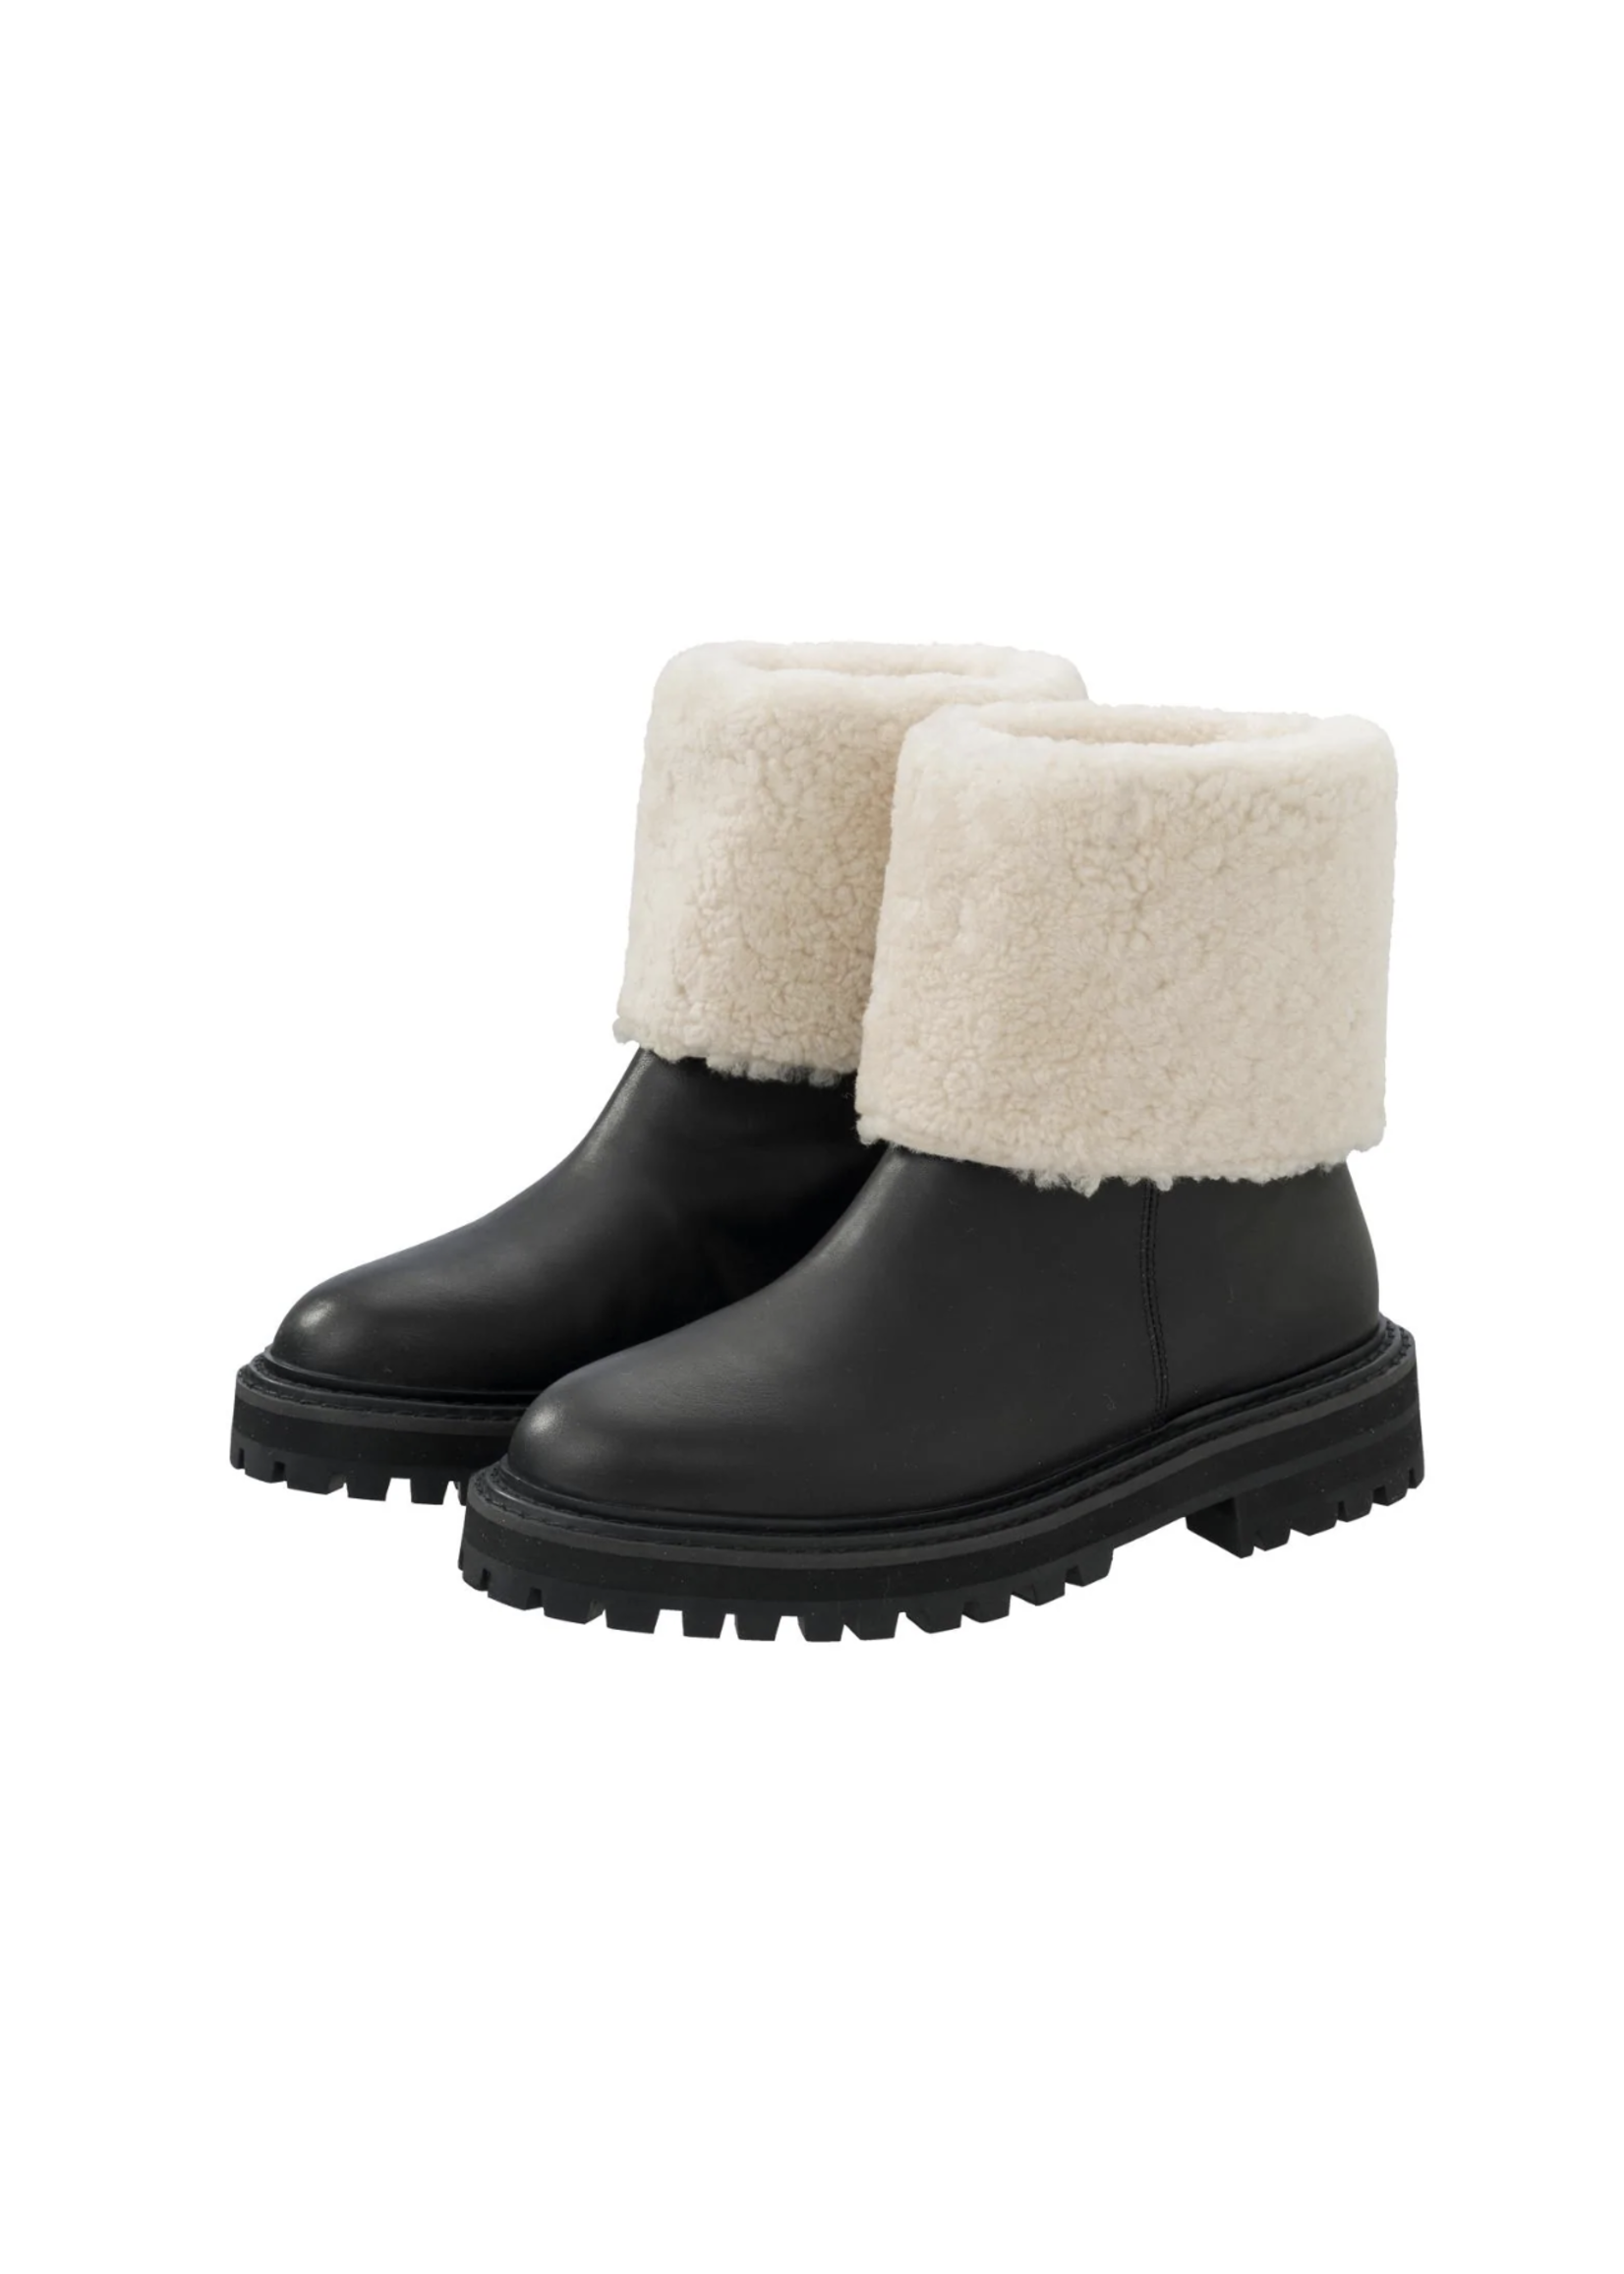 Yaya Yaya, Shearling boots, Black